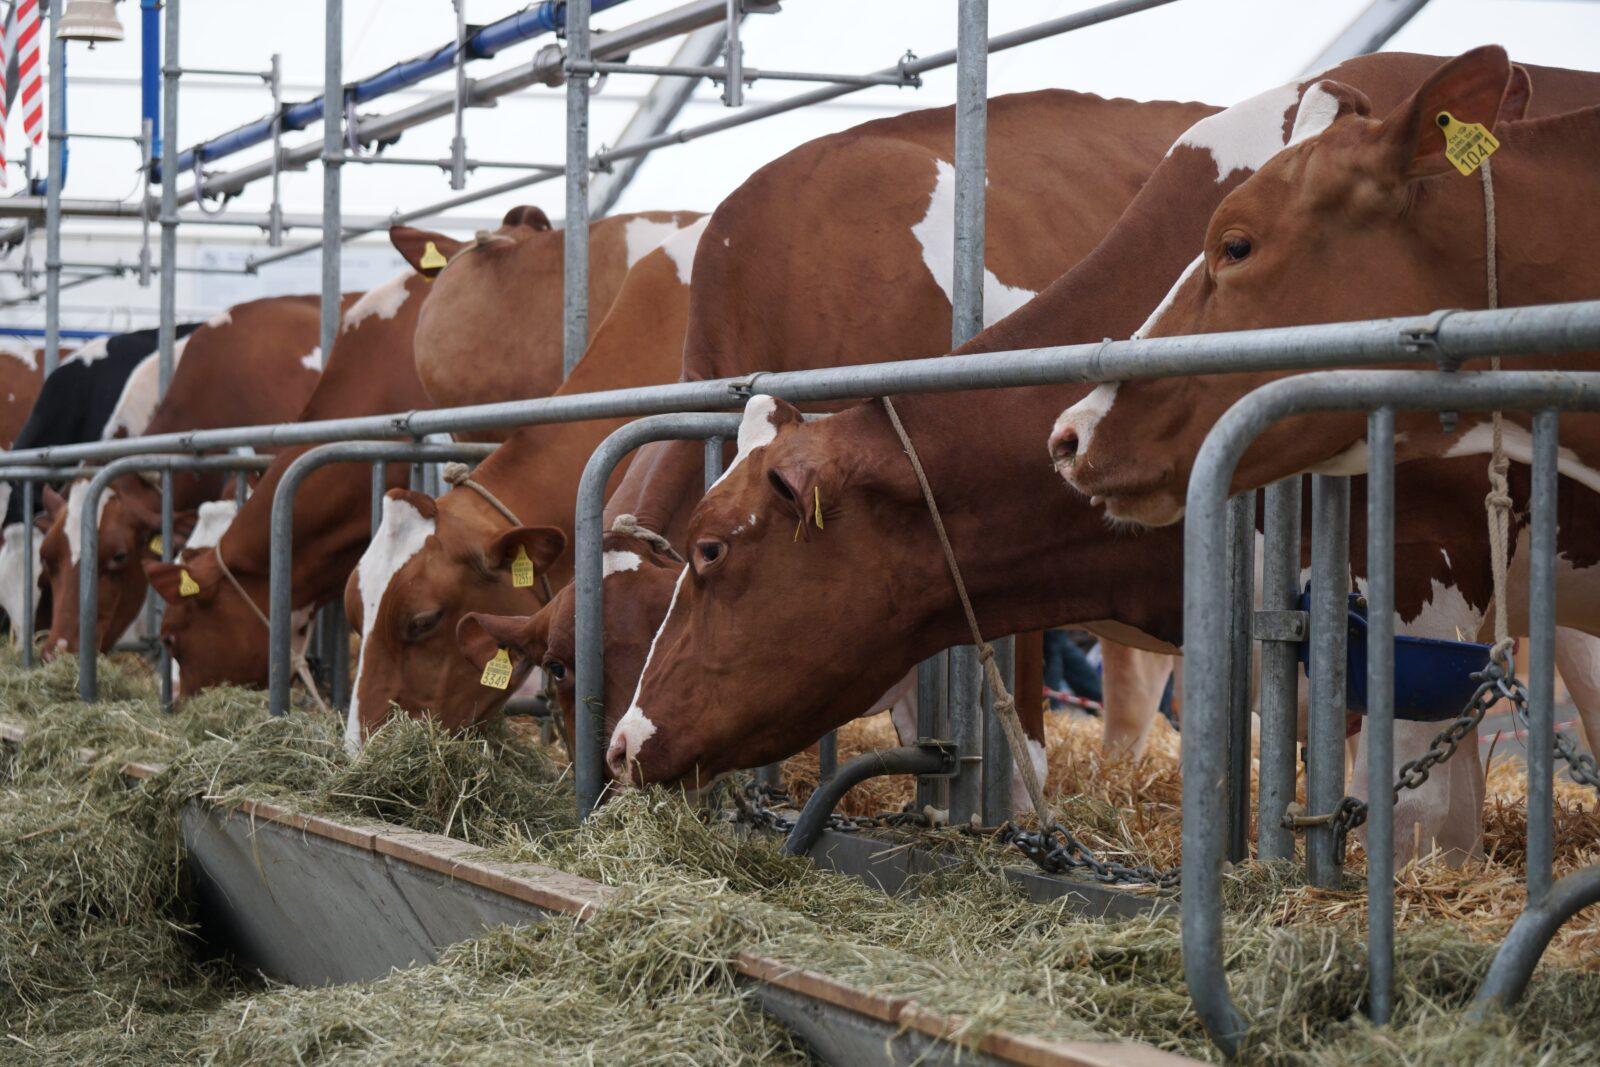  Ученые ФНАЦ ВИМ создали систему мониторинга здоровья коров в реальном времени через желудок